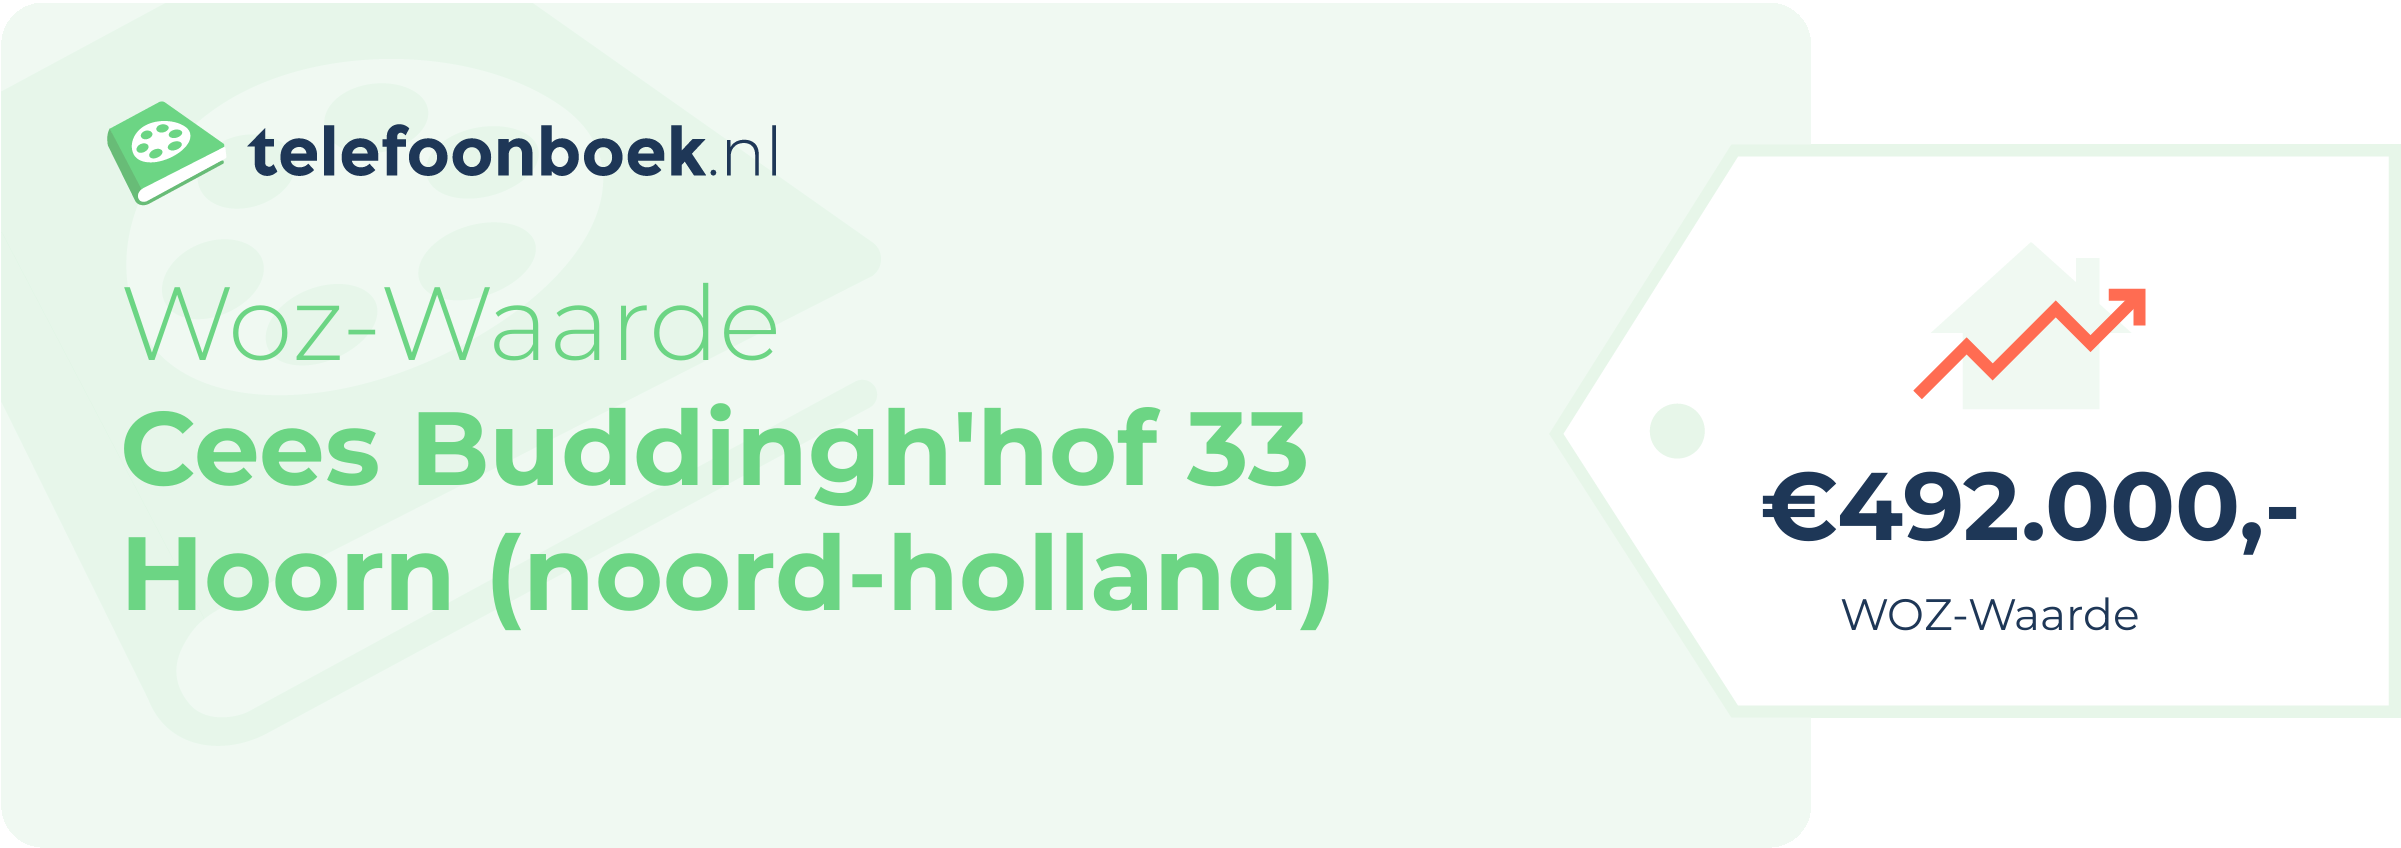 WOZ-waarde Cees Buddingh'hof 33 Hoorn (Noord-Holland)